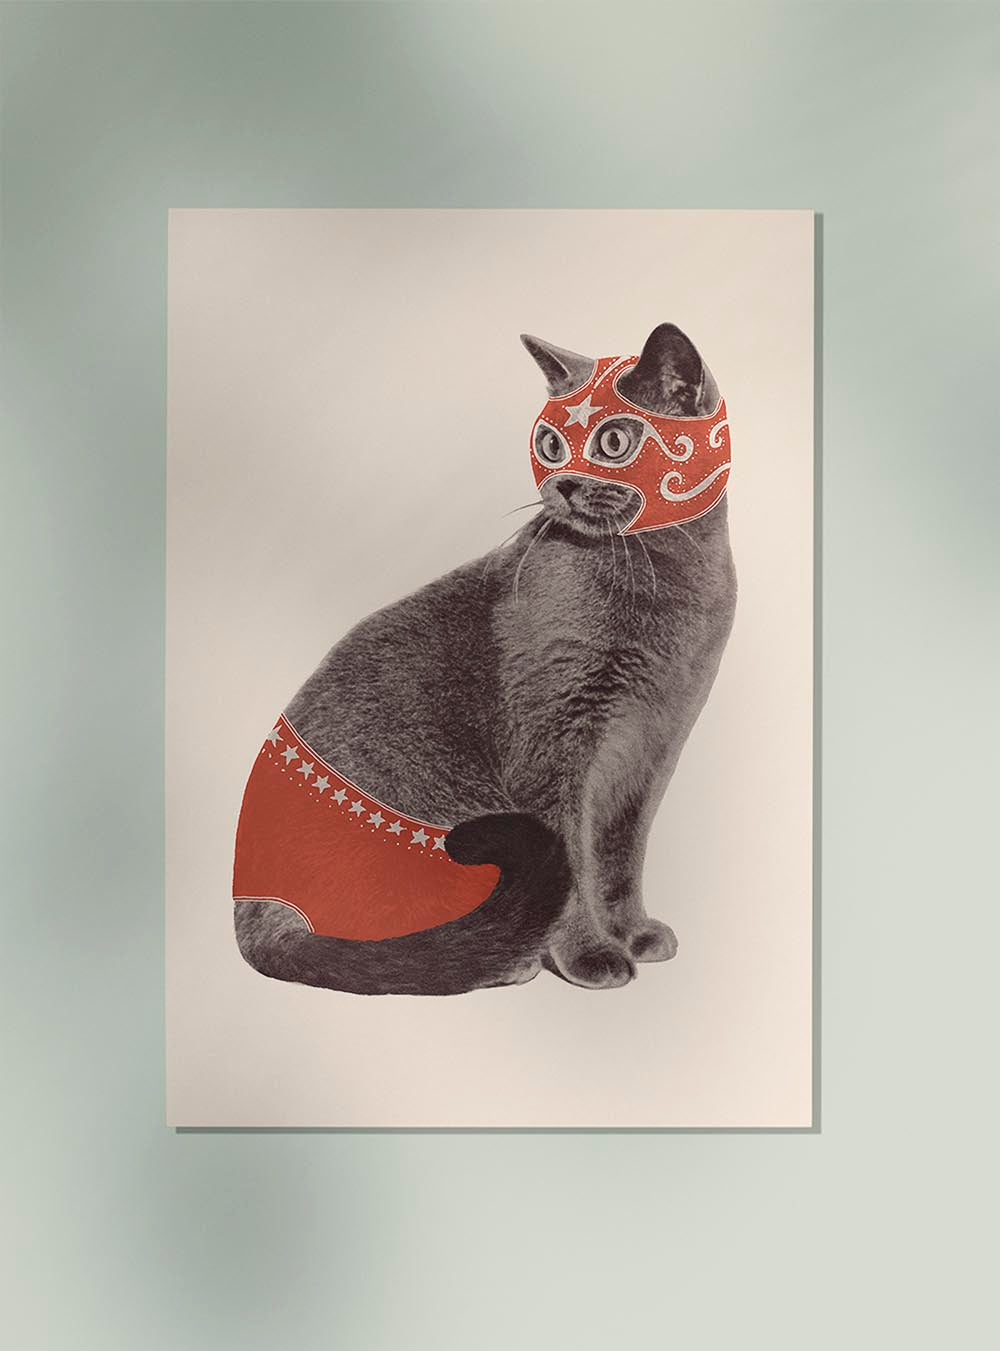 Cat Wrestler by Florant Bodart